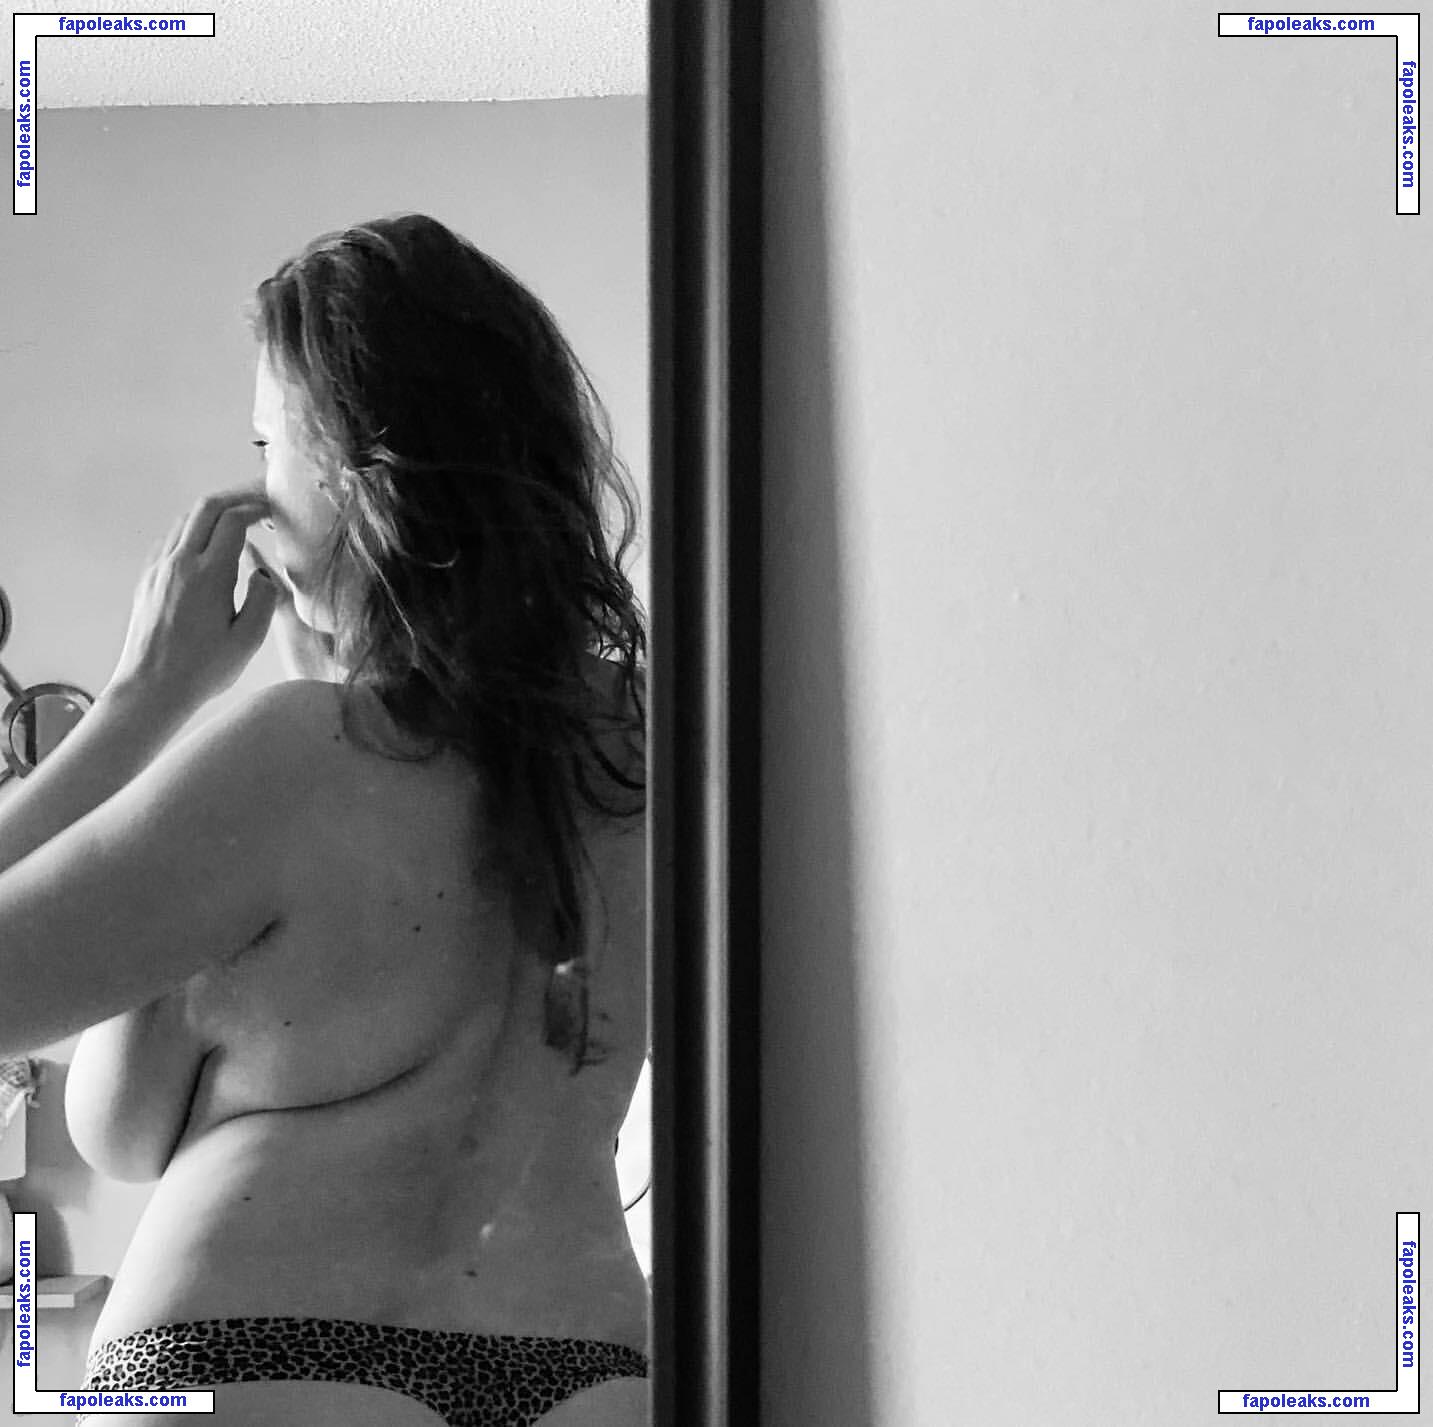 Ivie Walker / iviewalker / iviewalkerr nude photo #0018 from OnlyFans